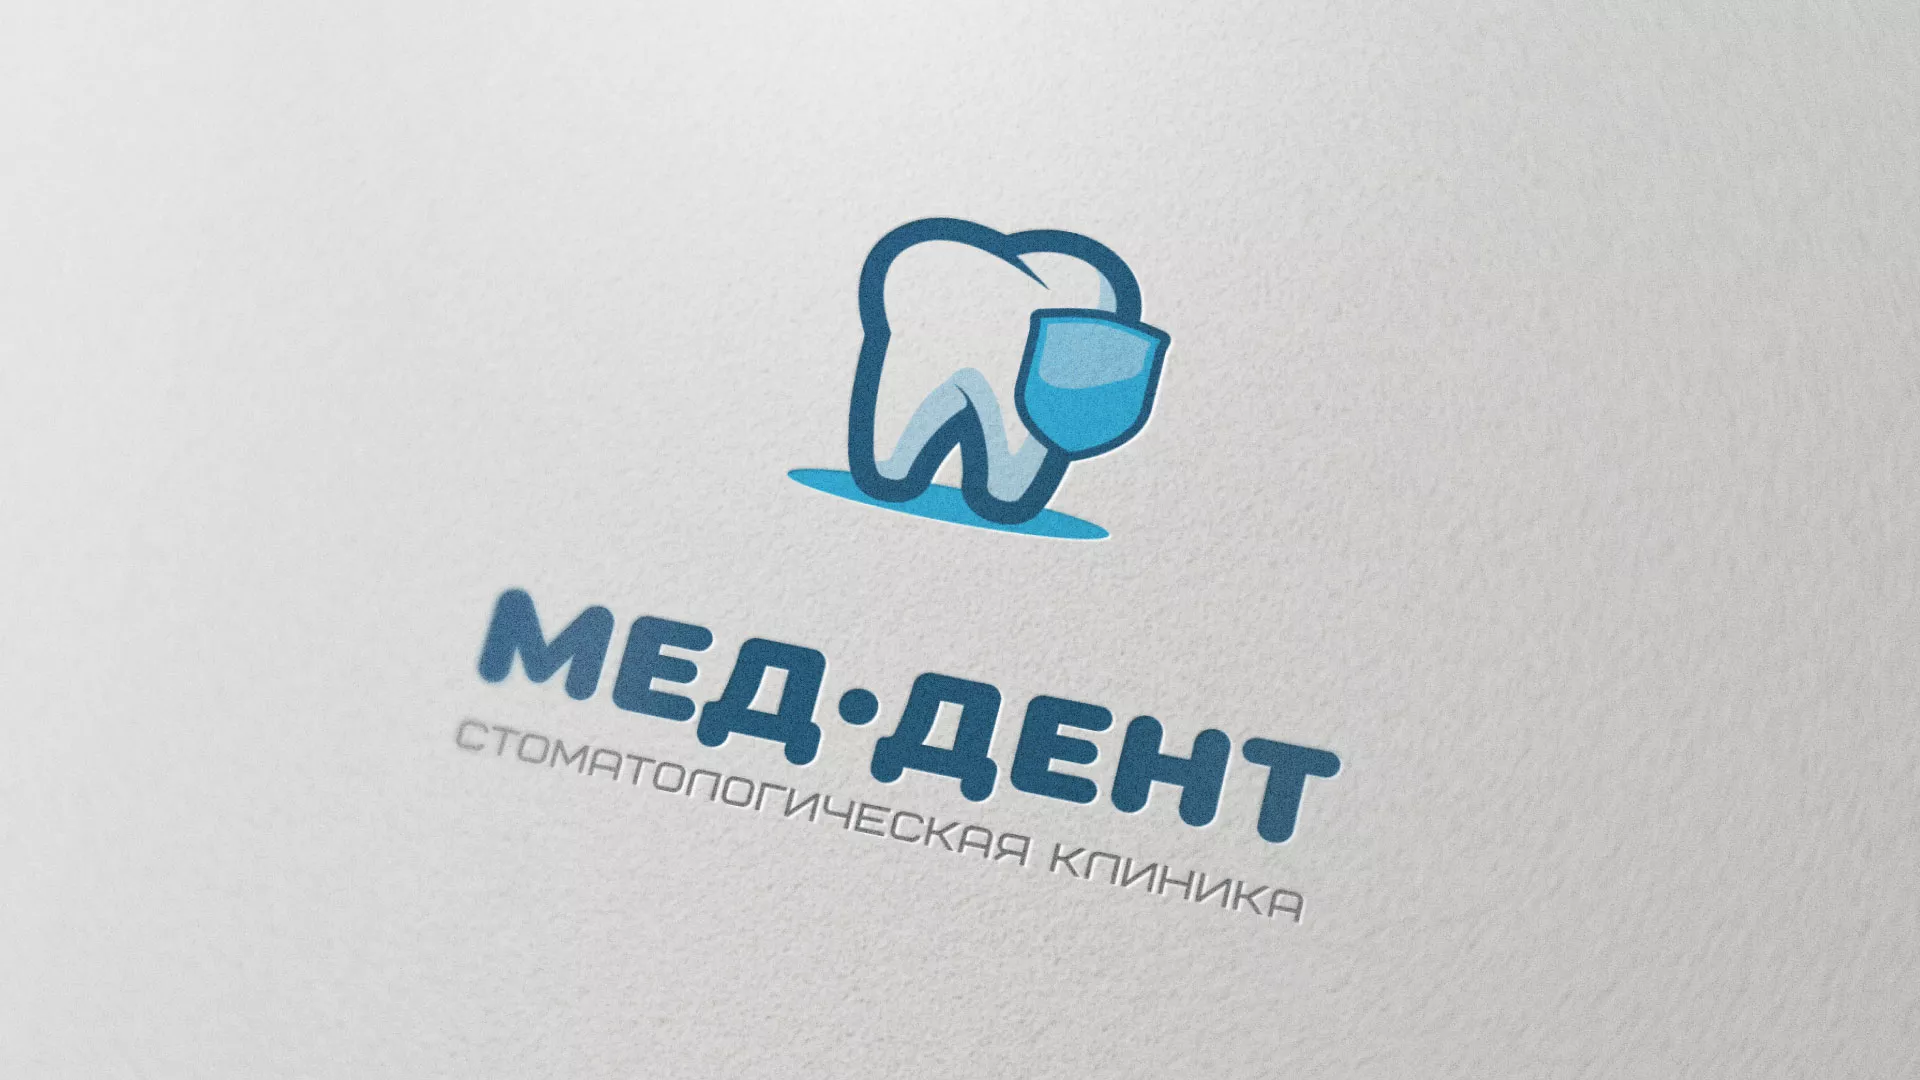 Разработка логотипа стоматологической клиники «МЕД-ДЕНТ» в Белой Холунице